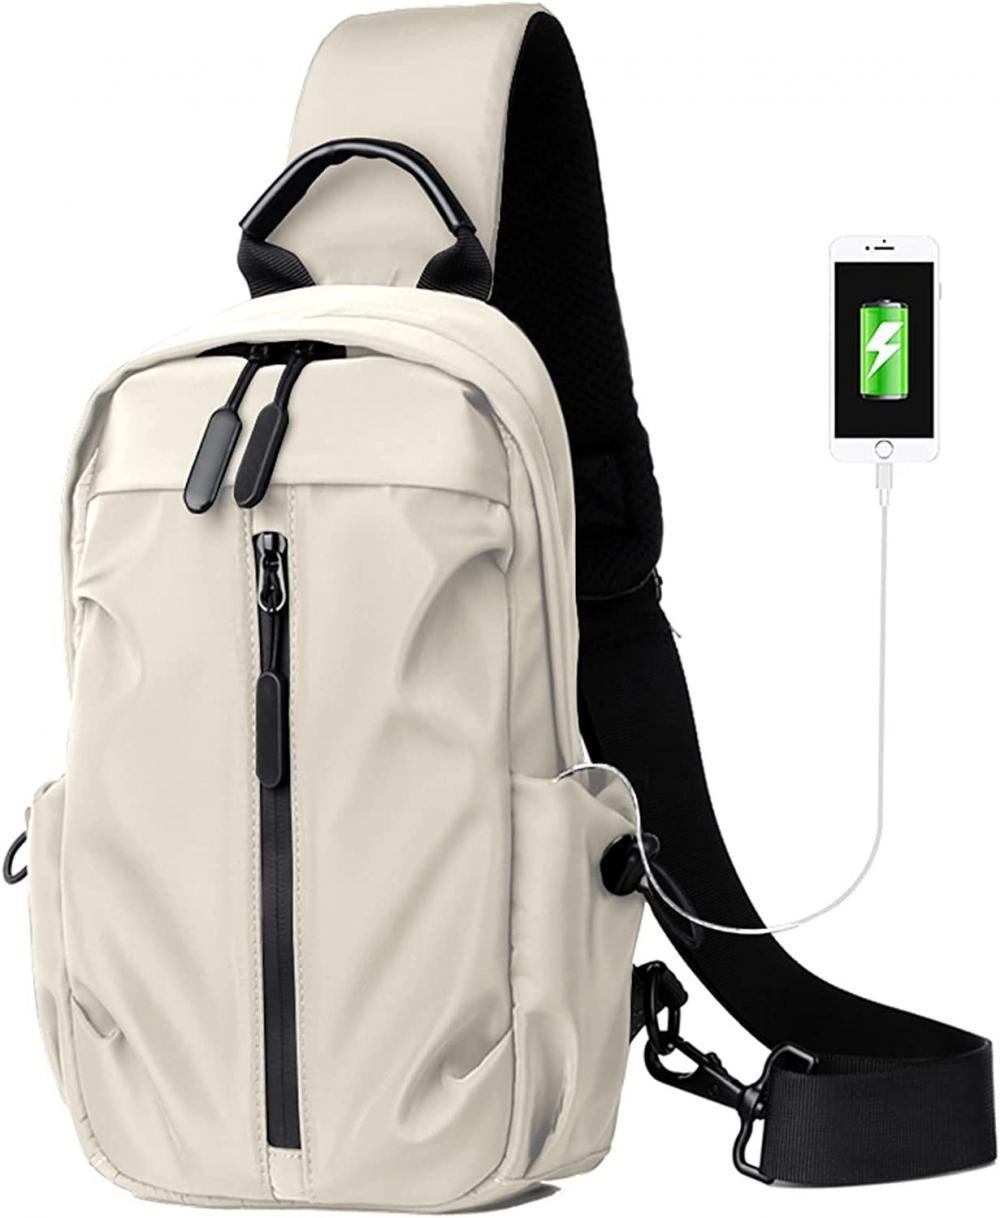 Lightweight Adjustable Strap Backpack